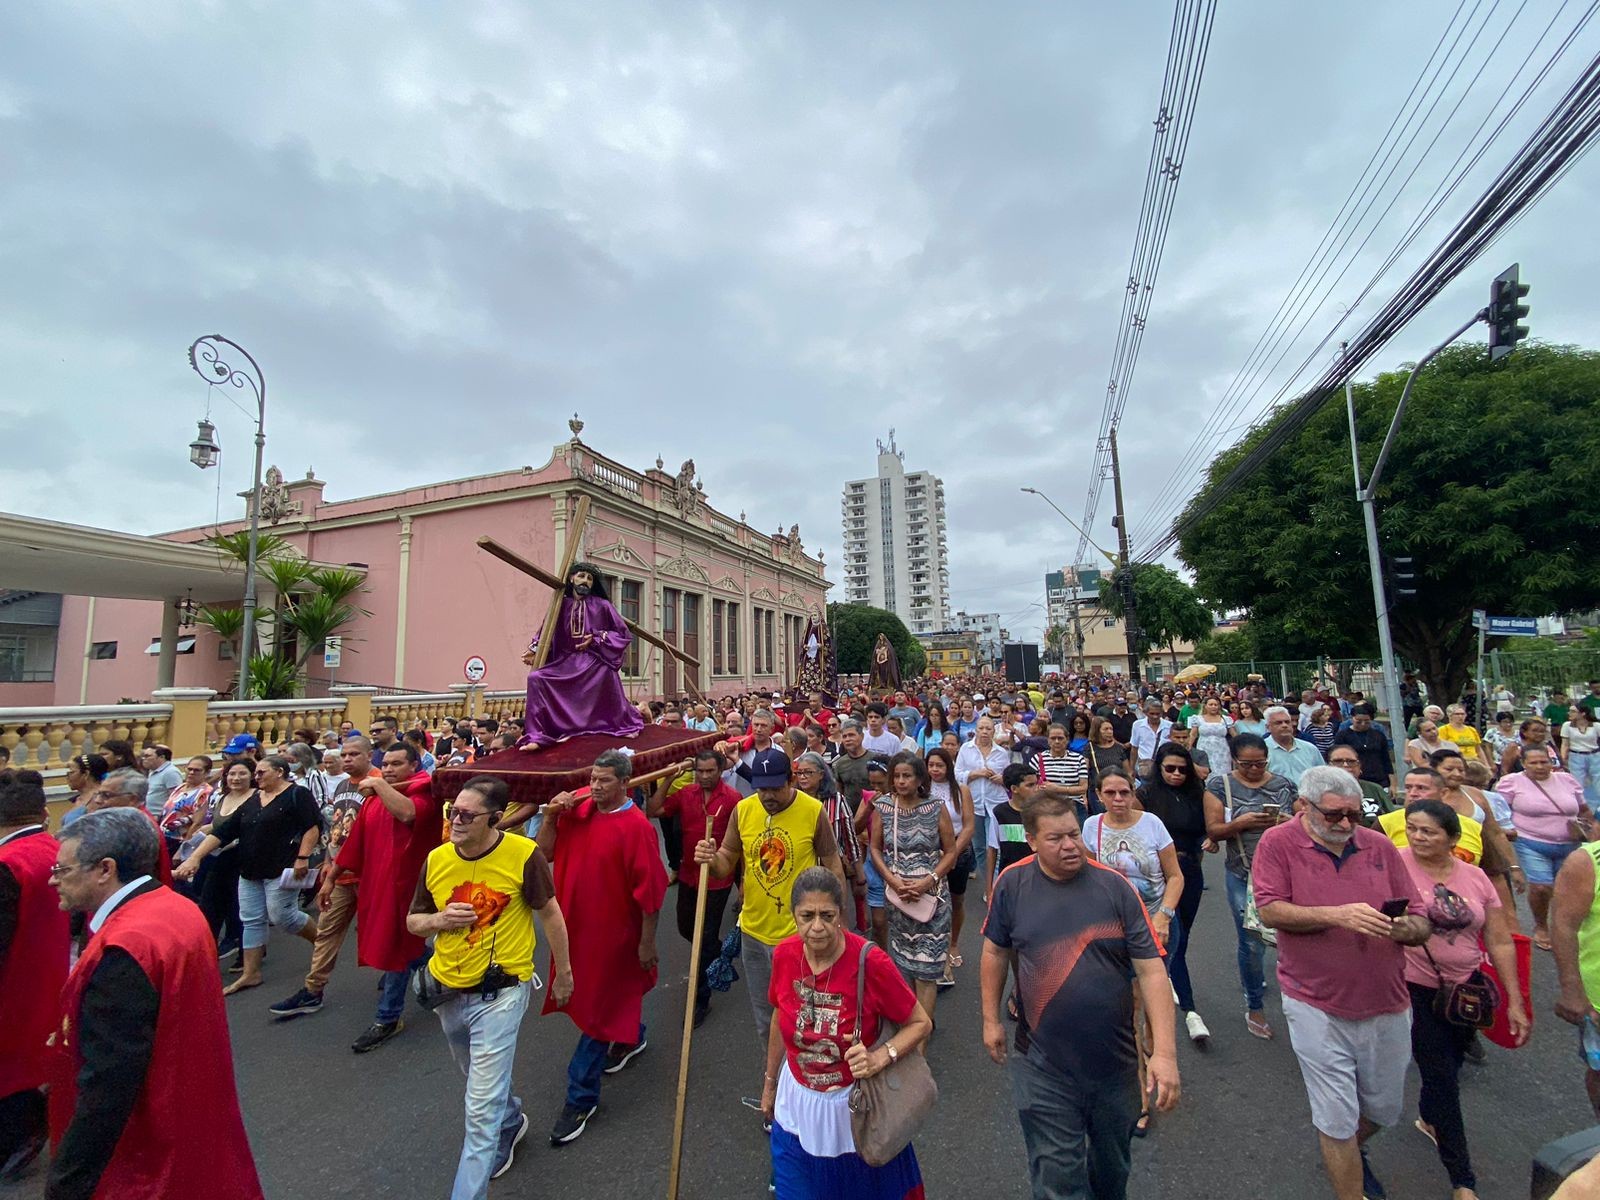 Cerca de 20 mil fiéis caminham por ruas durante a tradicional Procissão da Via-Sacra, em Manaus